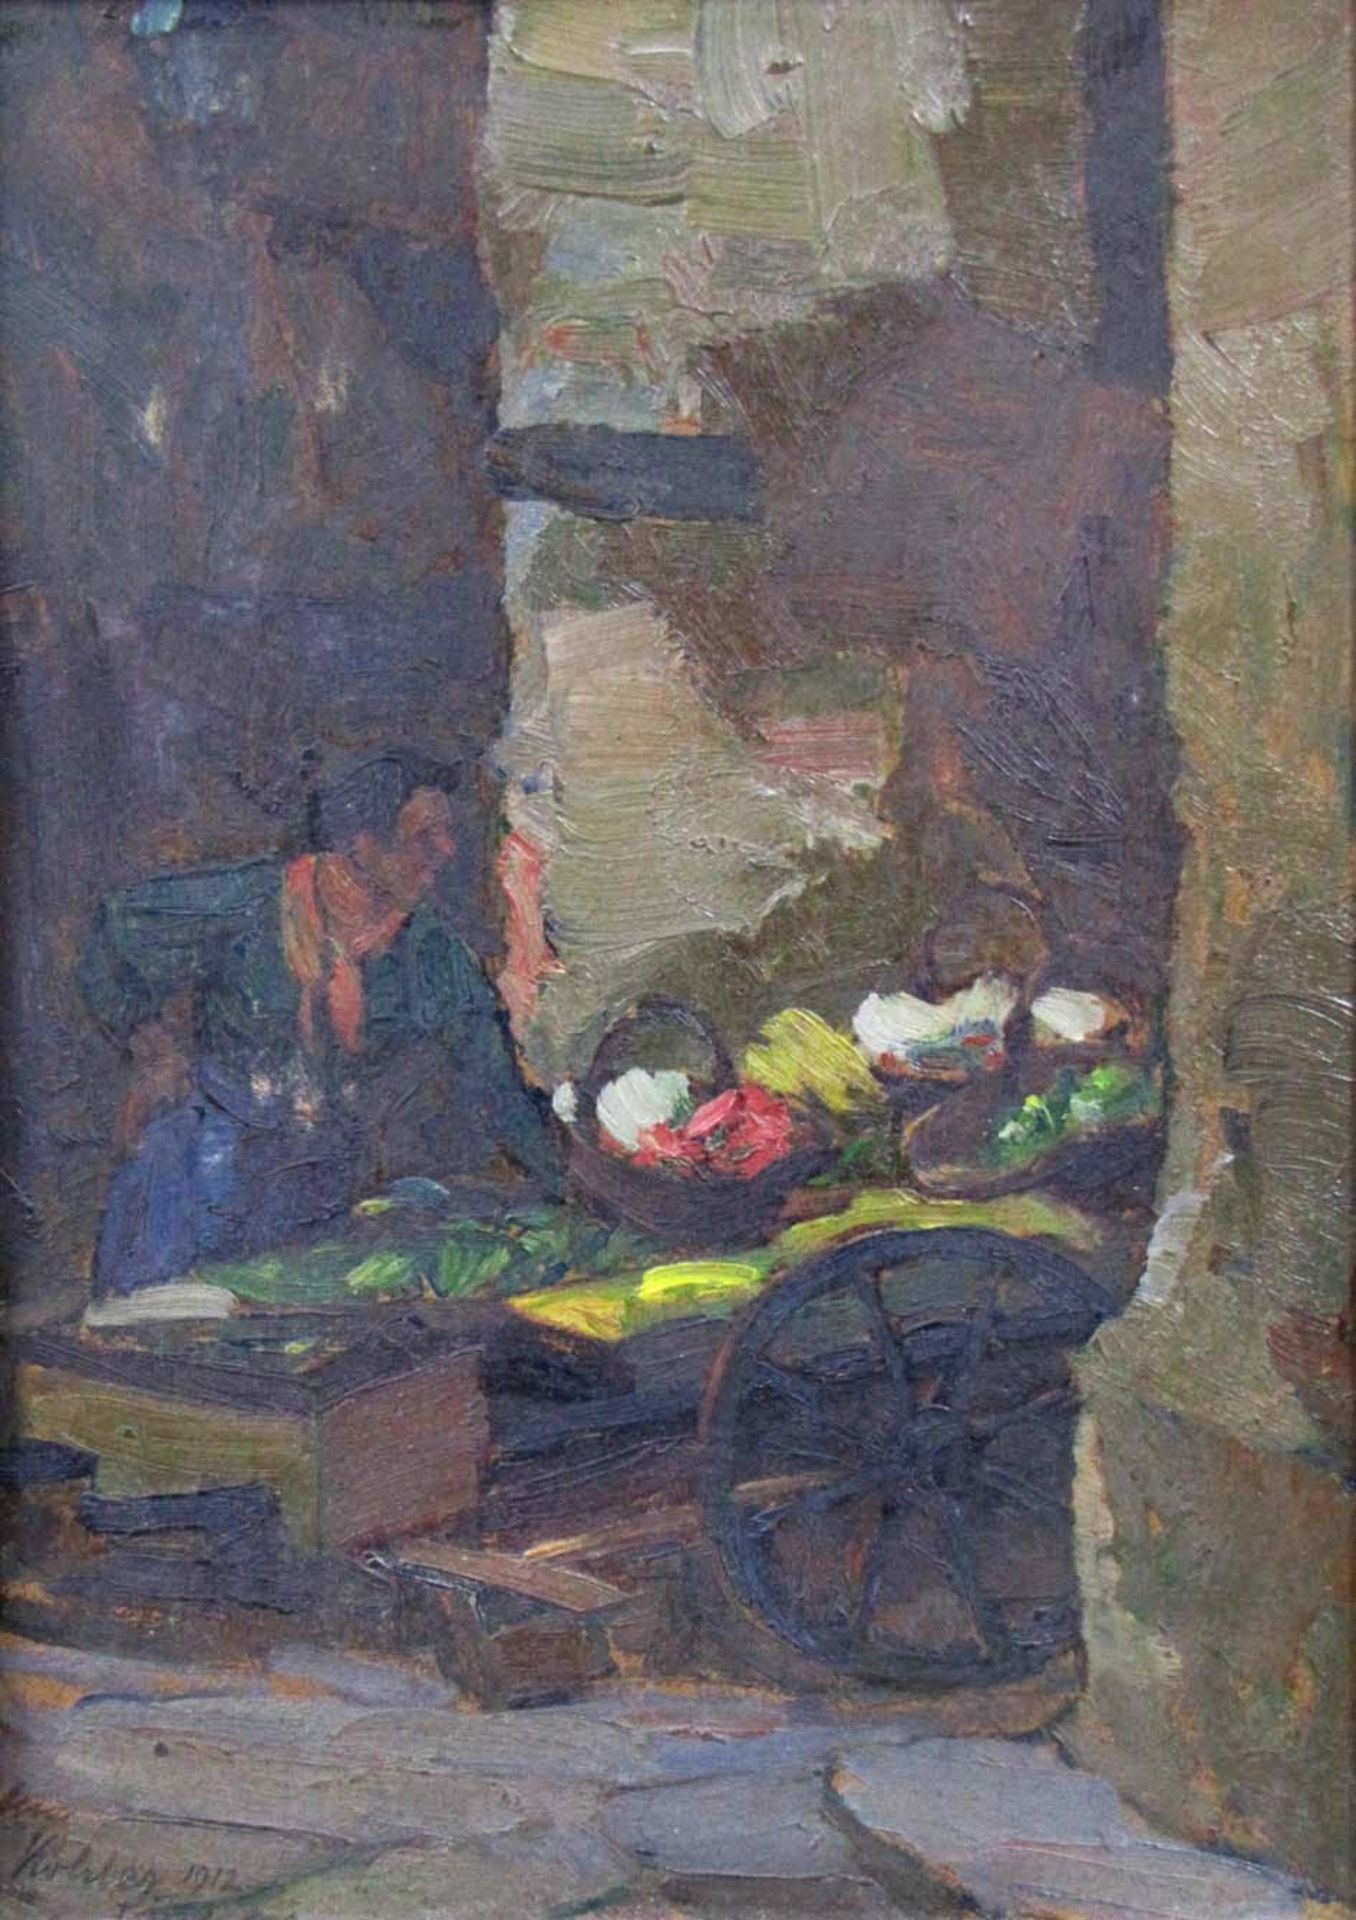 August KÖHLER (1881 - 1964). Marktweib mit Karren. Datiert 1912.29 cm x 21 cm. Gemälde, Öl auf